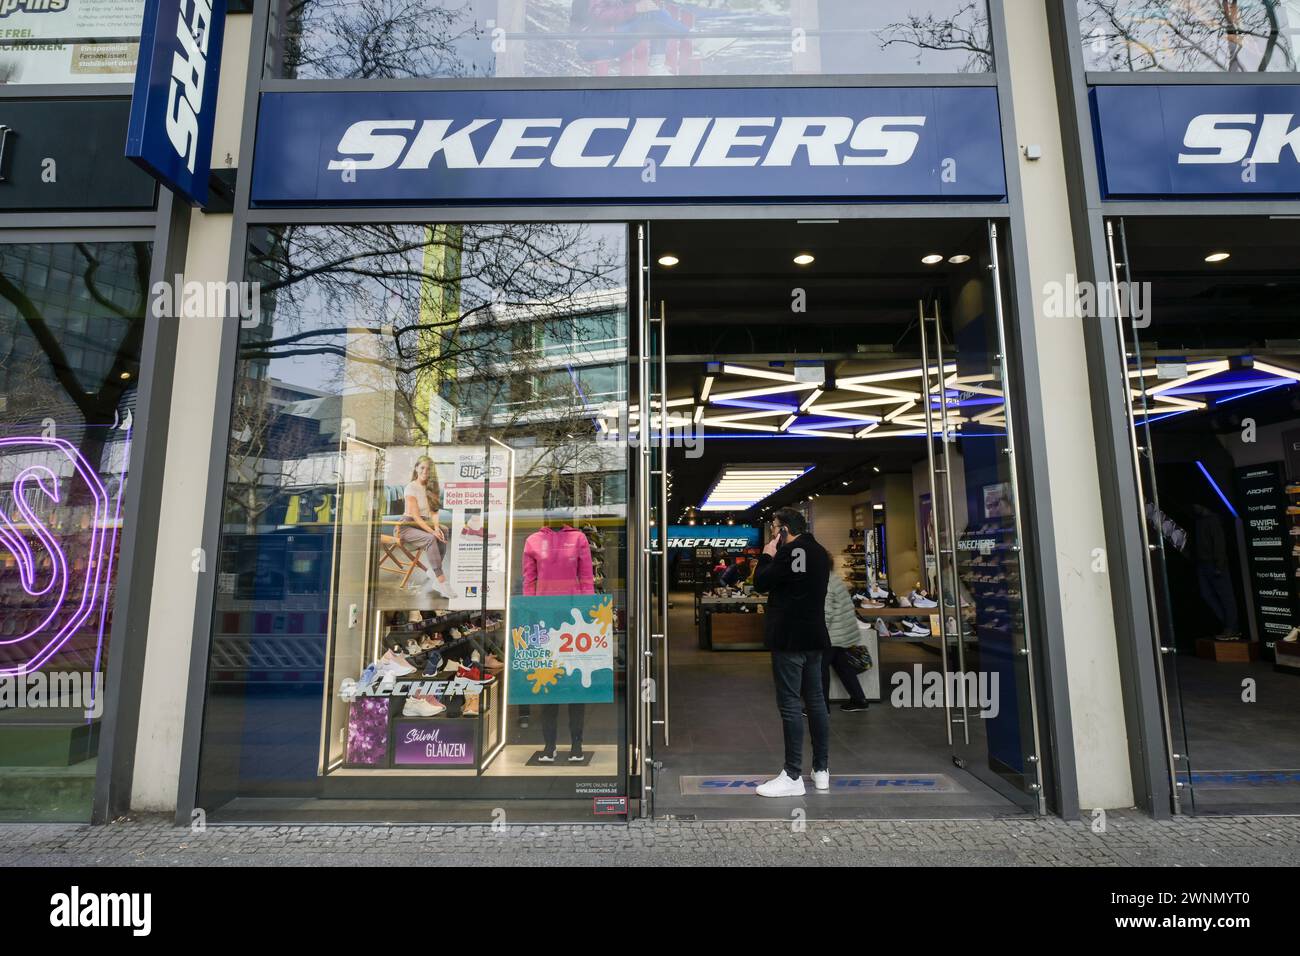 Skechers Sportschuhe, Geschäft, Tauentzienstraße, Charlottenburg, Berlin, Deutschland Stock Photo